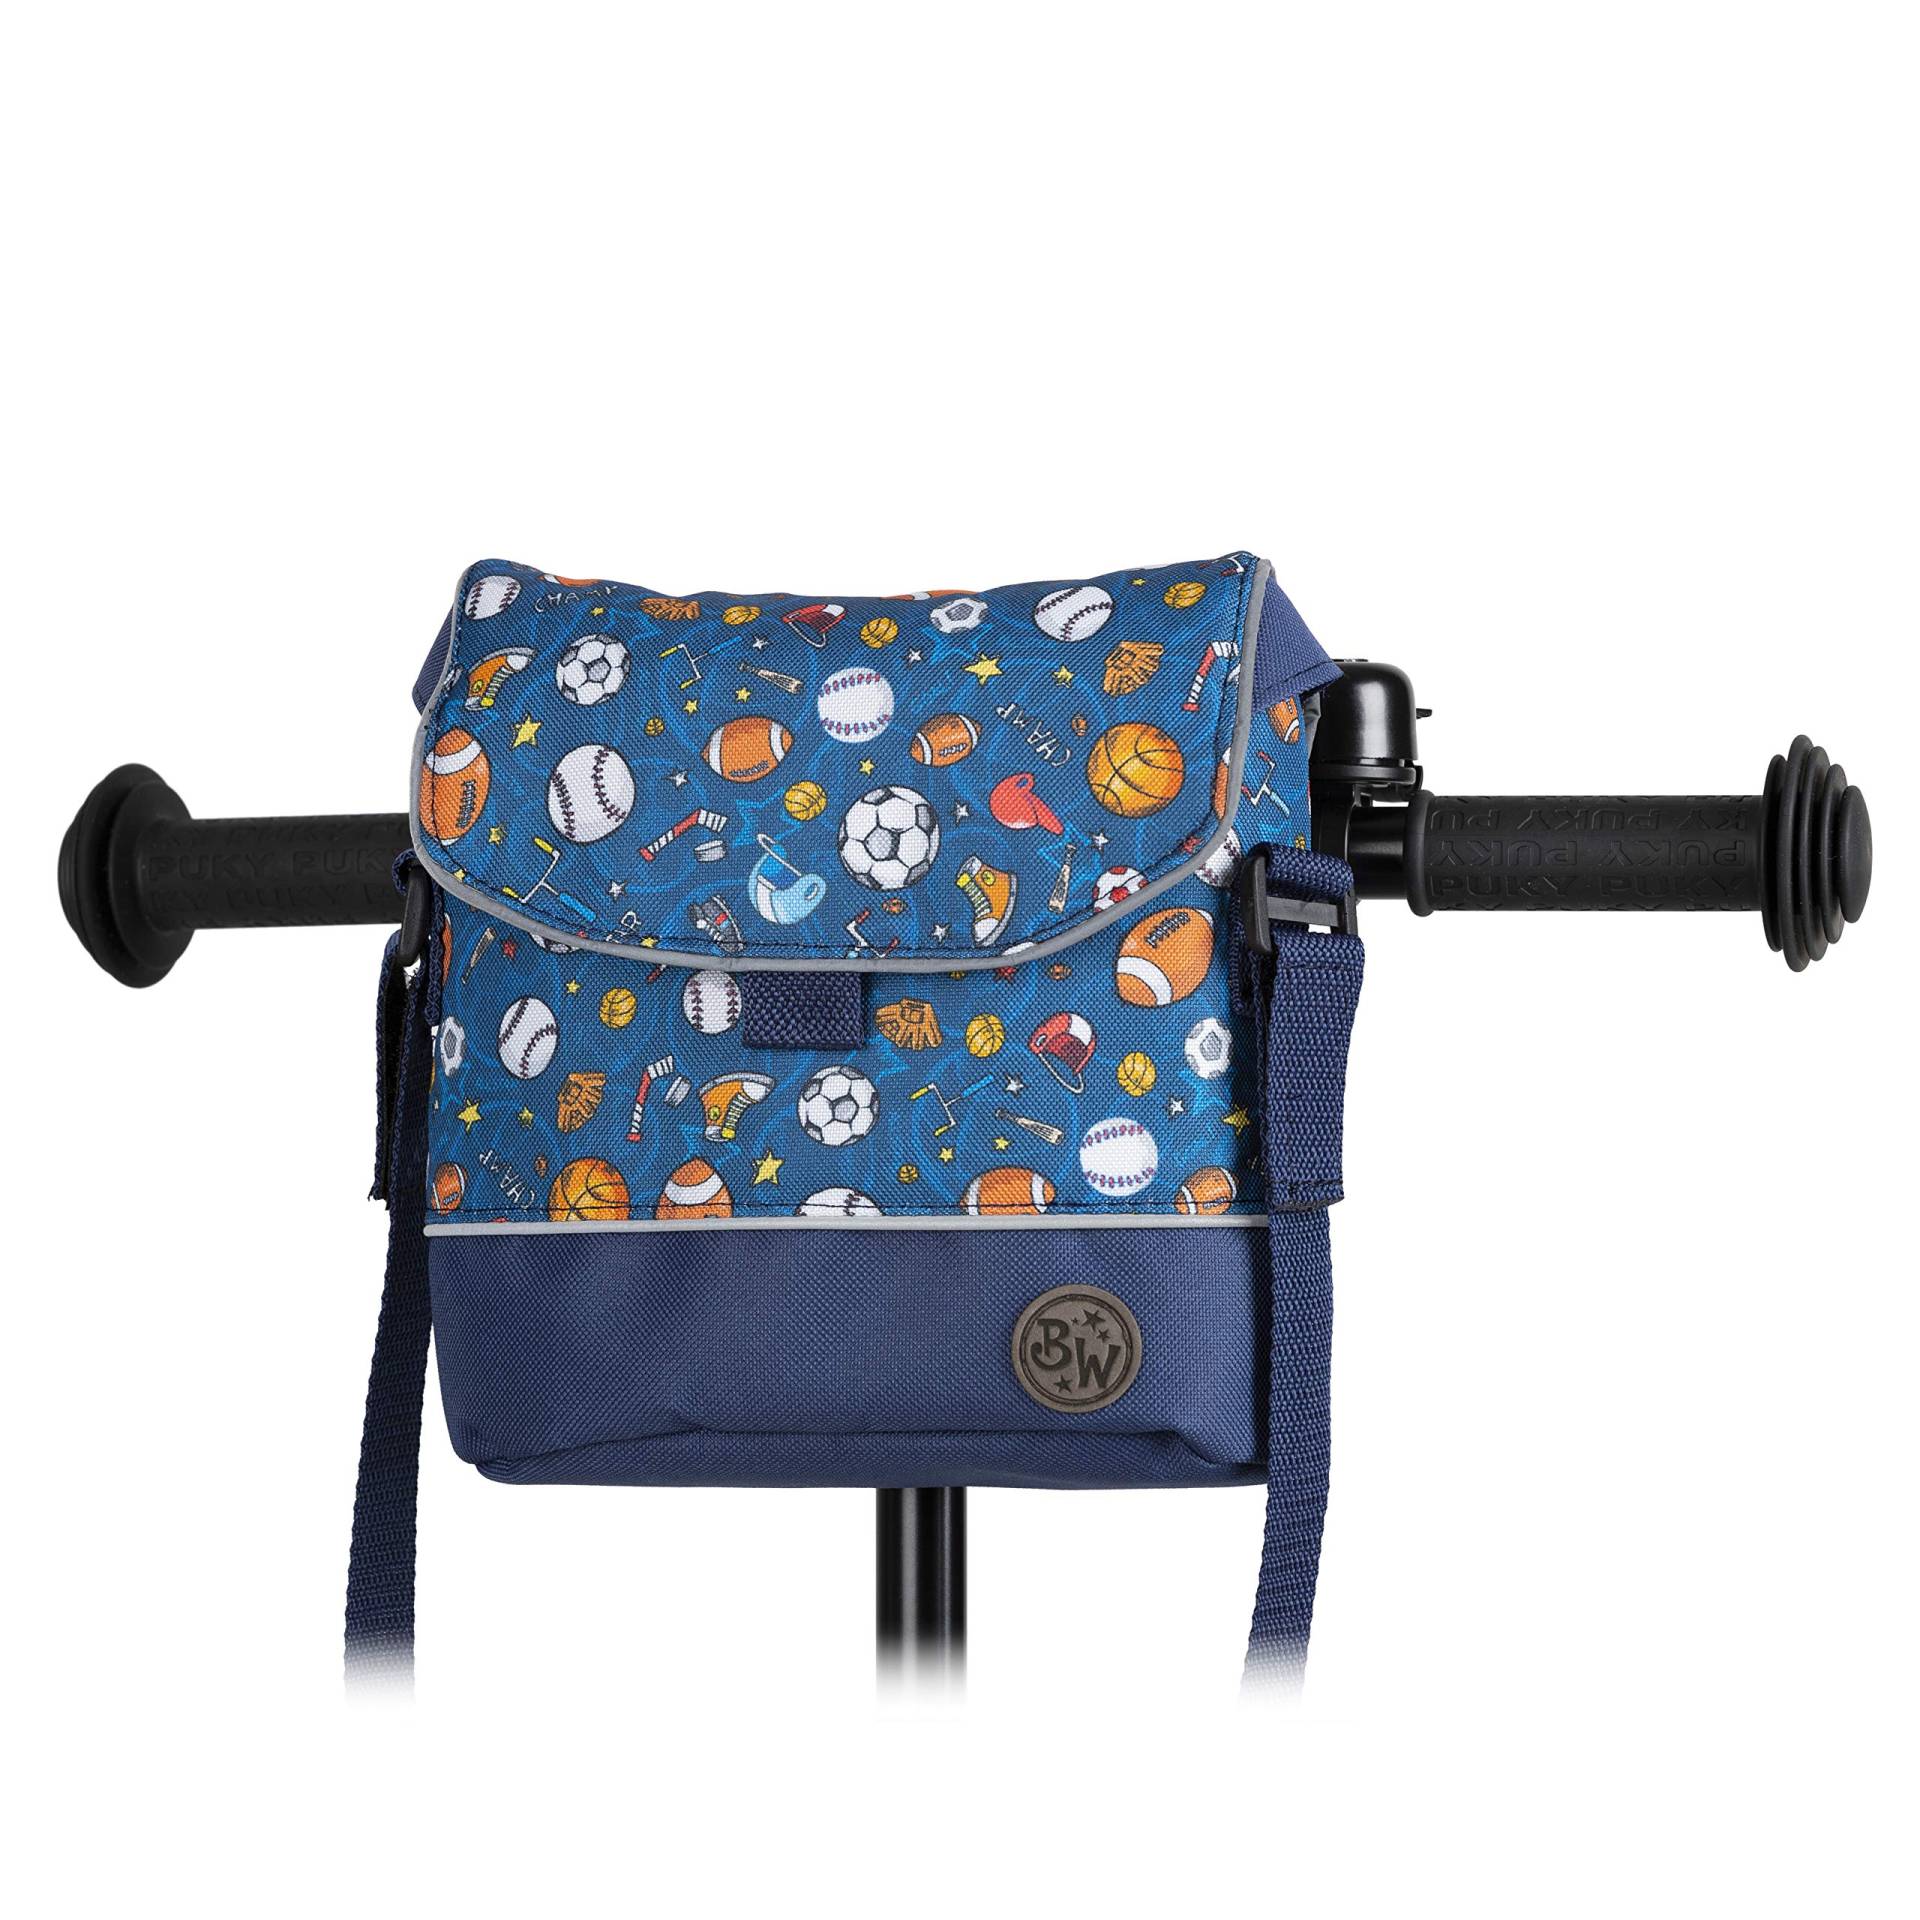 BAMBINIWELT Lenkertasche Tasche kompatibel mit Puky mit Woom Laufrad Räder Roller Fahrrad Fahrradtasche für Kinder wasserabweisend mit Schultergurt (Modell 1) von BambiniWelt by Rafael K.